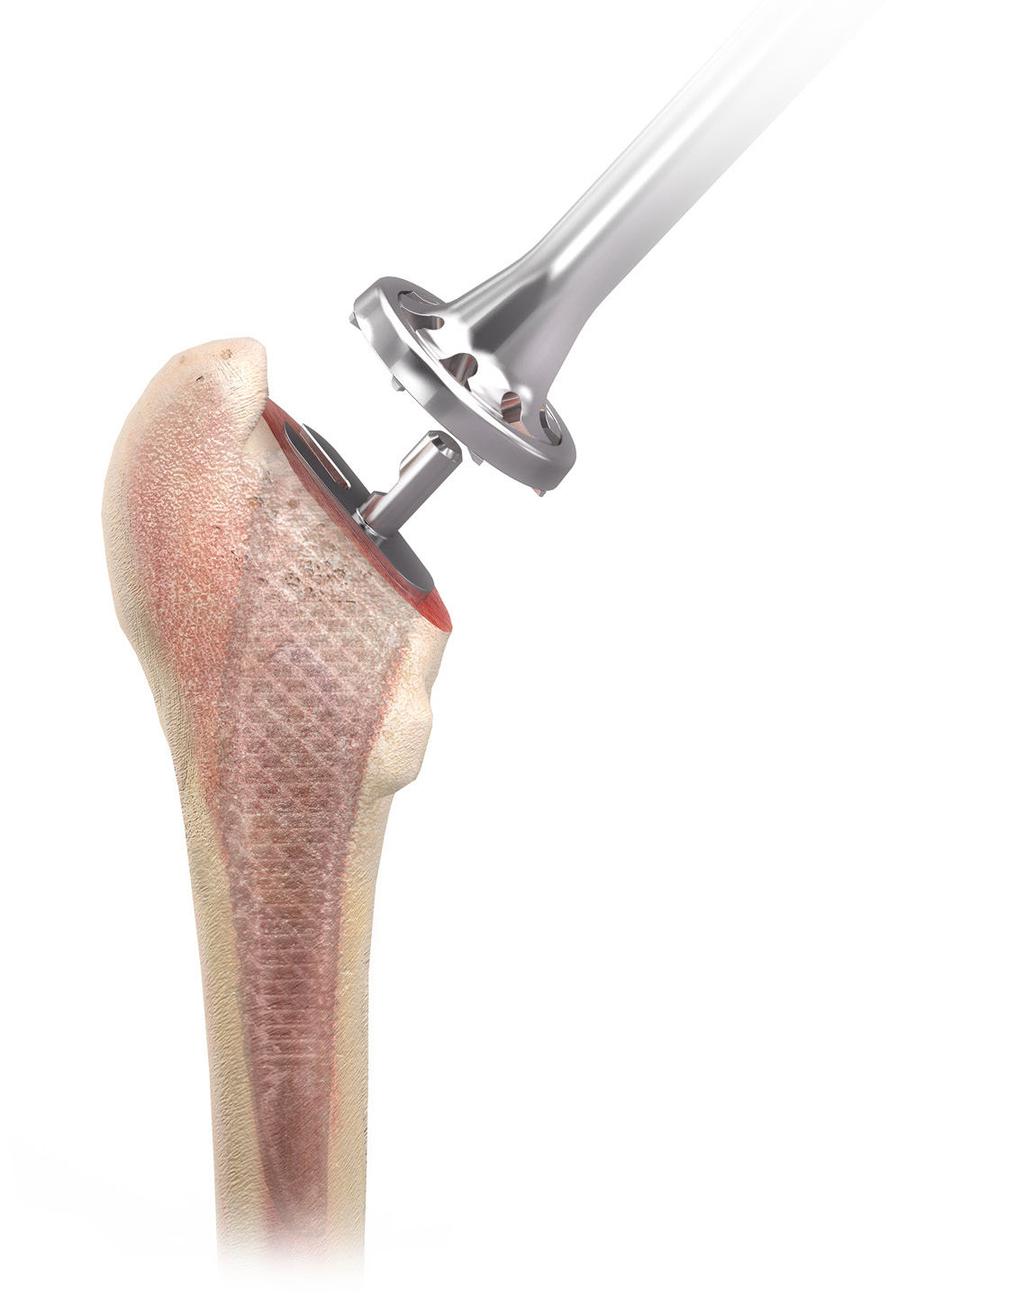 Preparación de la cavidad femoral El vástago TRI-LOCK de conservación ósea ofrece varios mangos de raspa que permiten múltiples abordajes quirúrgicos posibles para la artroplastia de cadera.